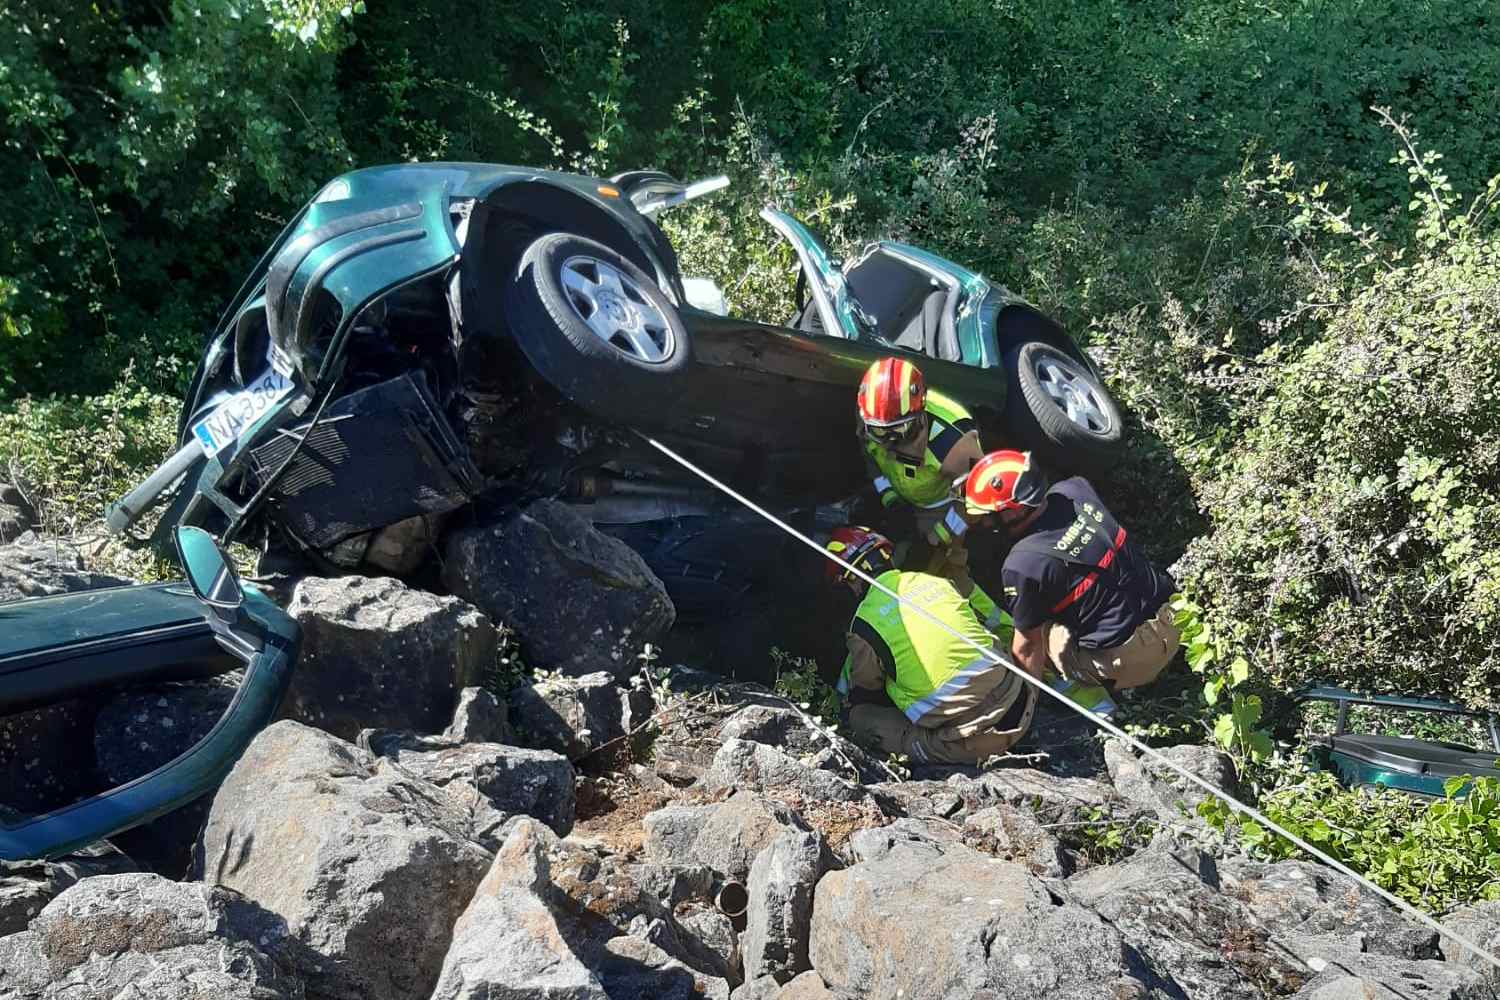 Queda atrapado en el interior de su coche tras volcar en Puente de Órbigo (León) 